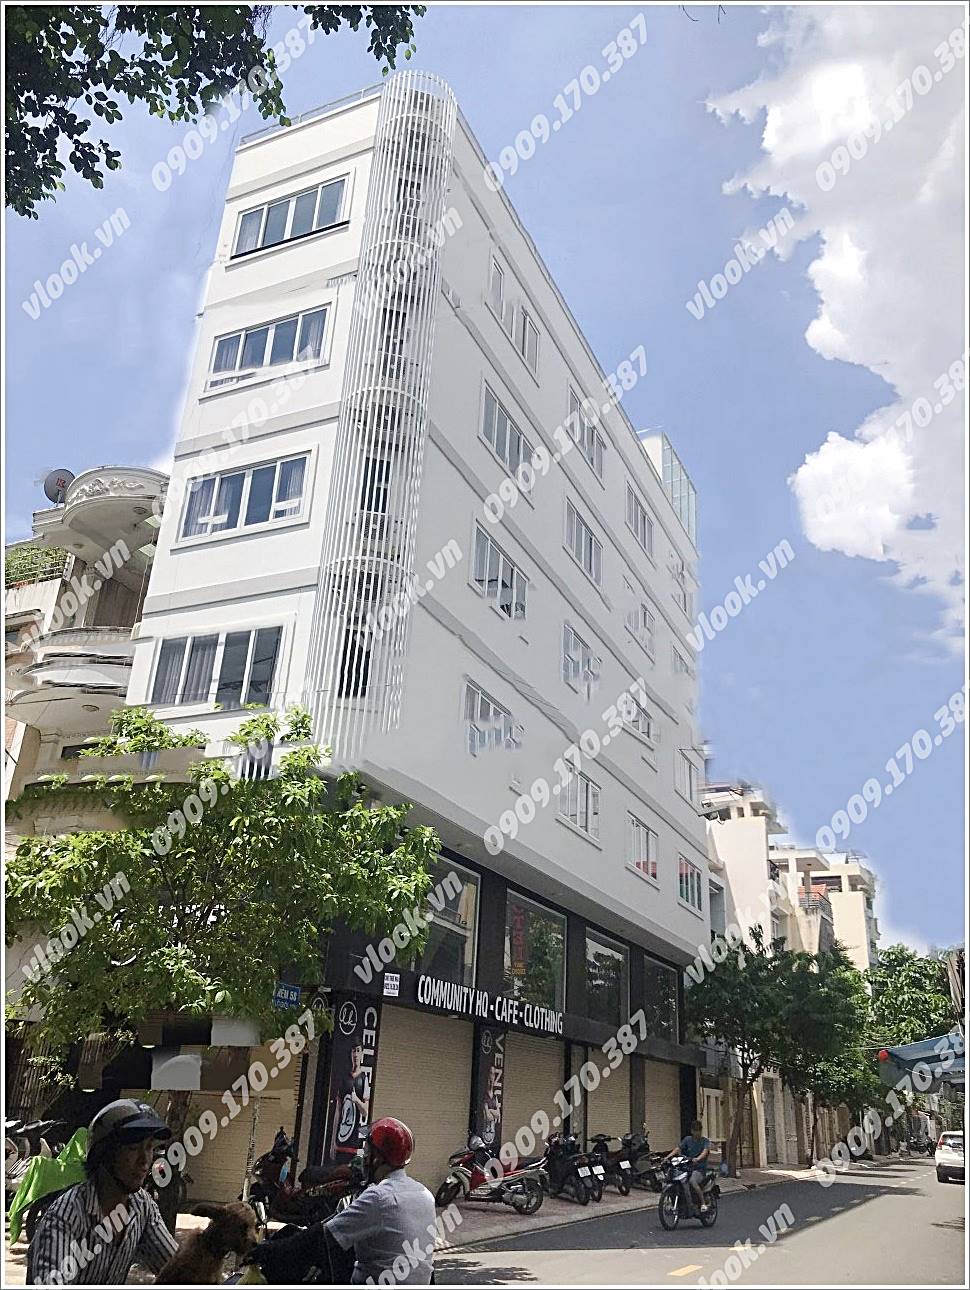 Cao ốc cho thuê văn phòng tòa nhà M.G Building Nguyễn Minh Hoàng, Phường 12, Quận Tân Bình, TPHCM - vlook.vn